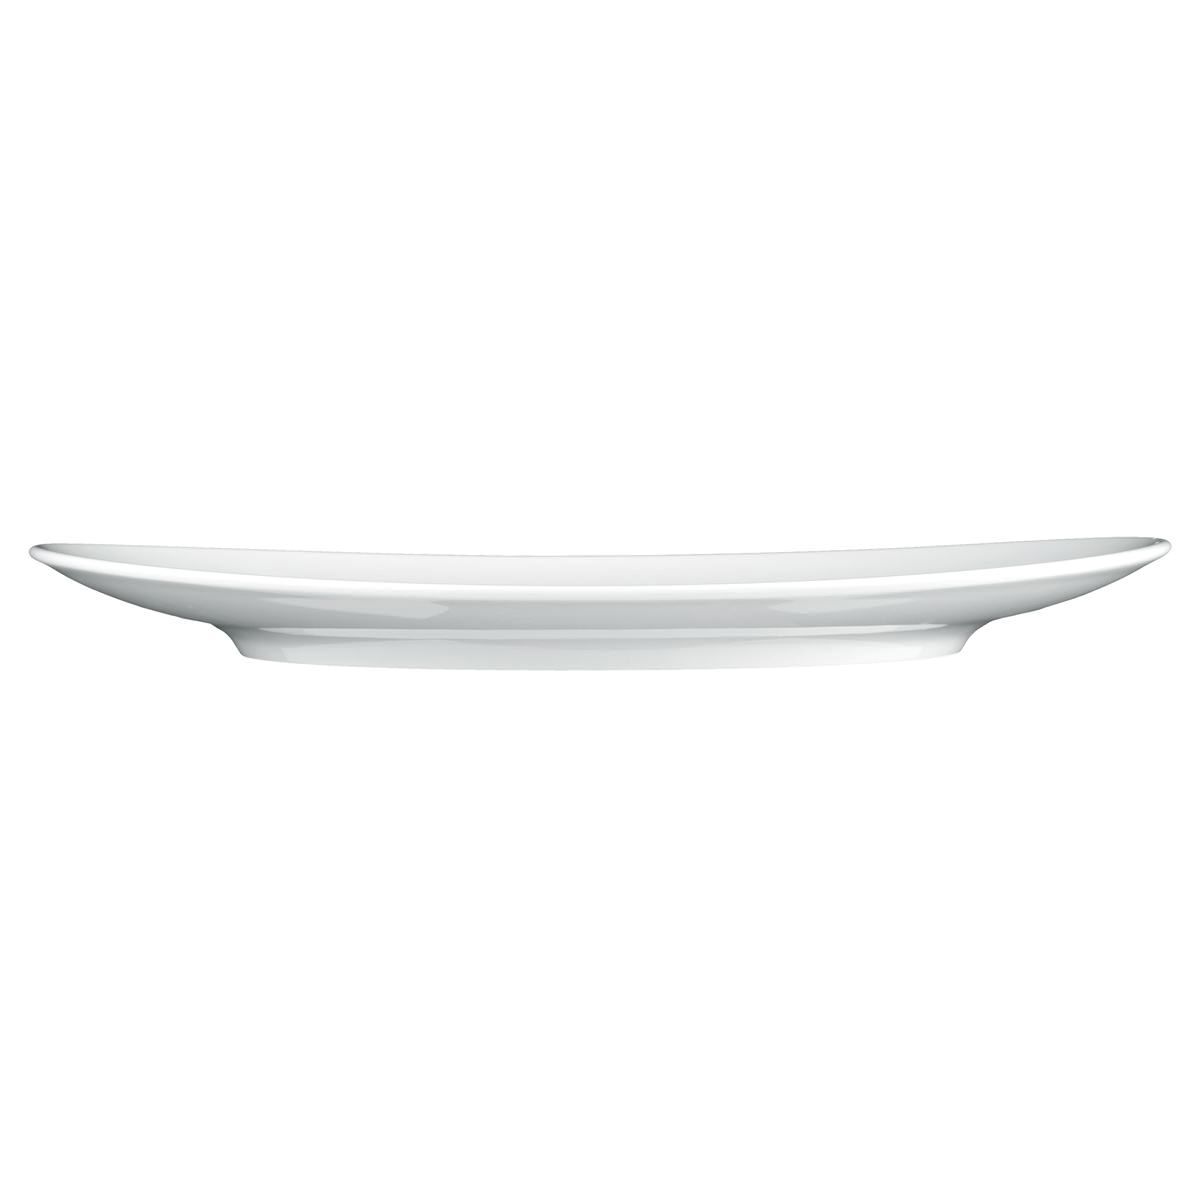 Teller oval 5235  34 cm - Serie Meran